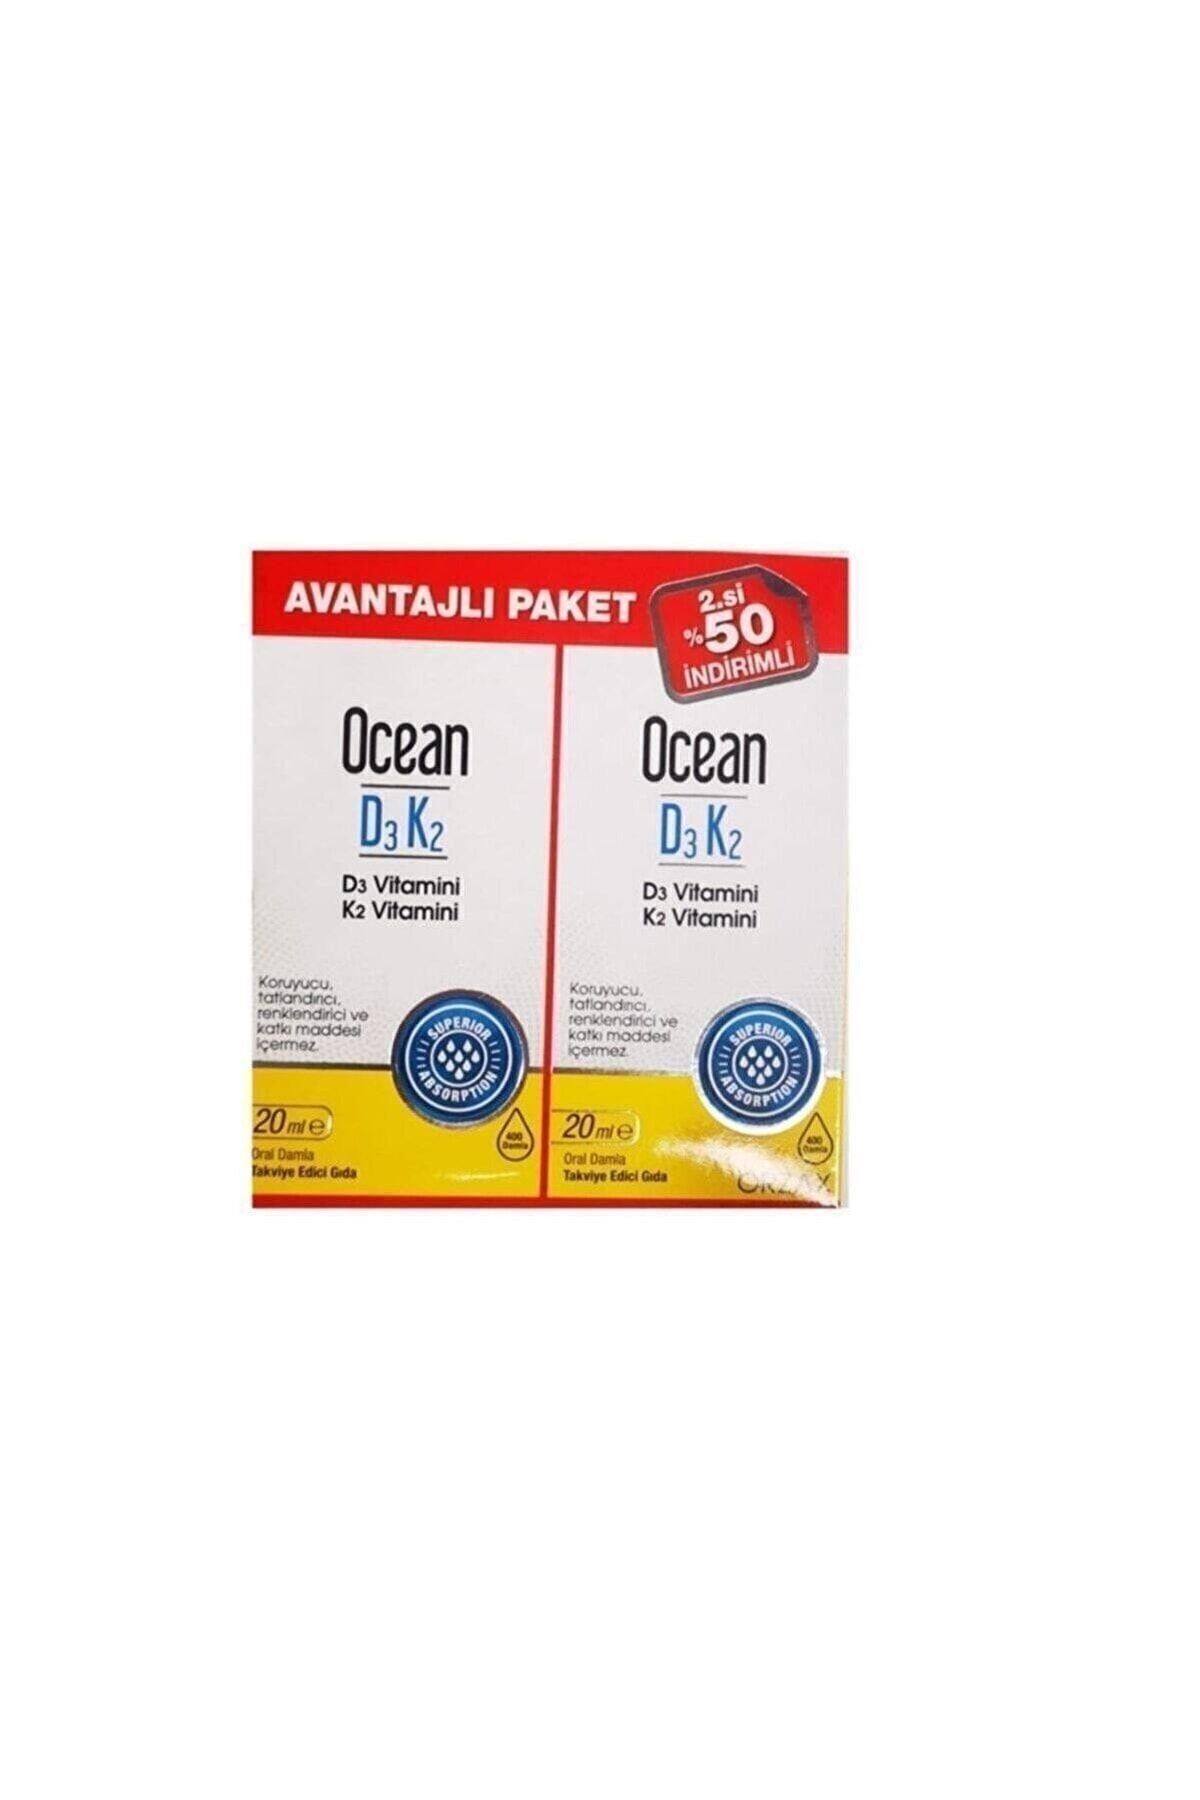 Ocean Orzax D3 K2 20 Ml Takviye Edici Gıda Avantajlı Paket